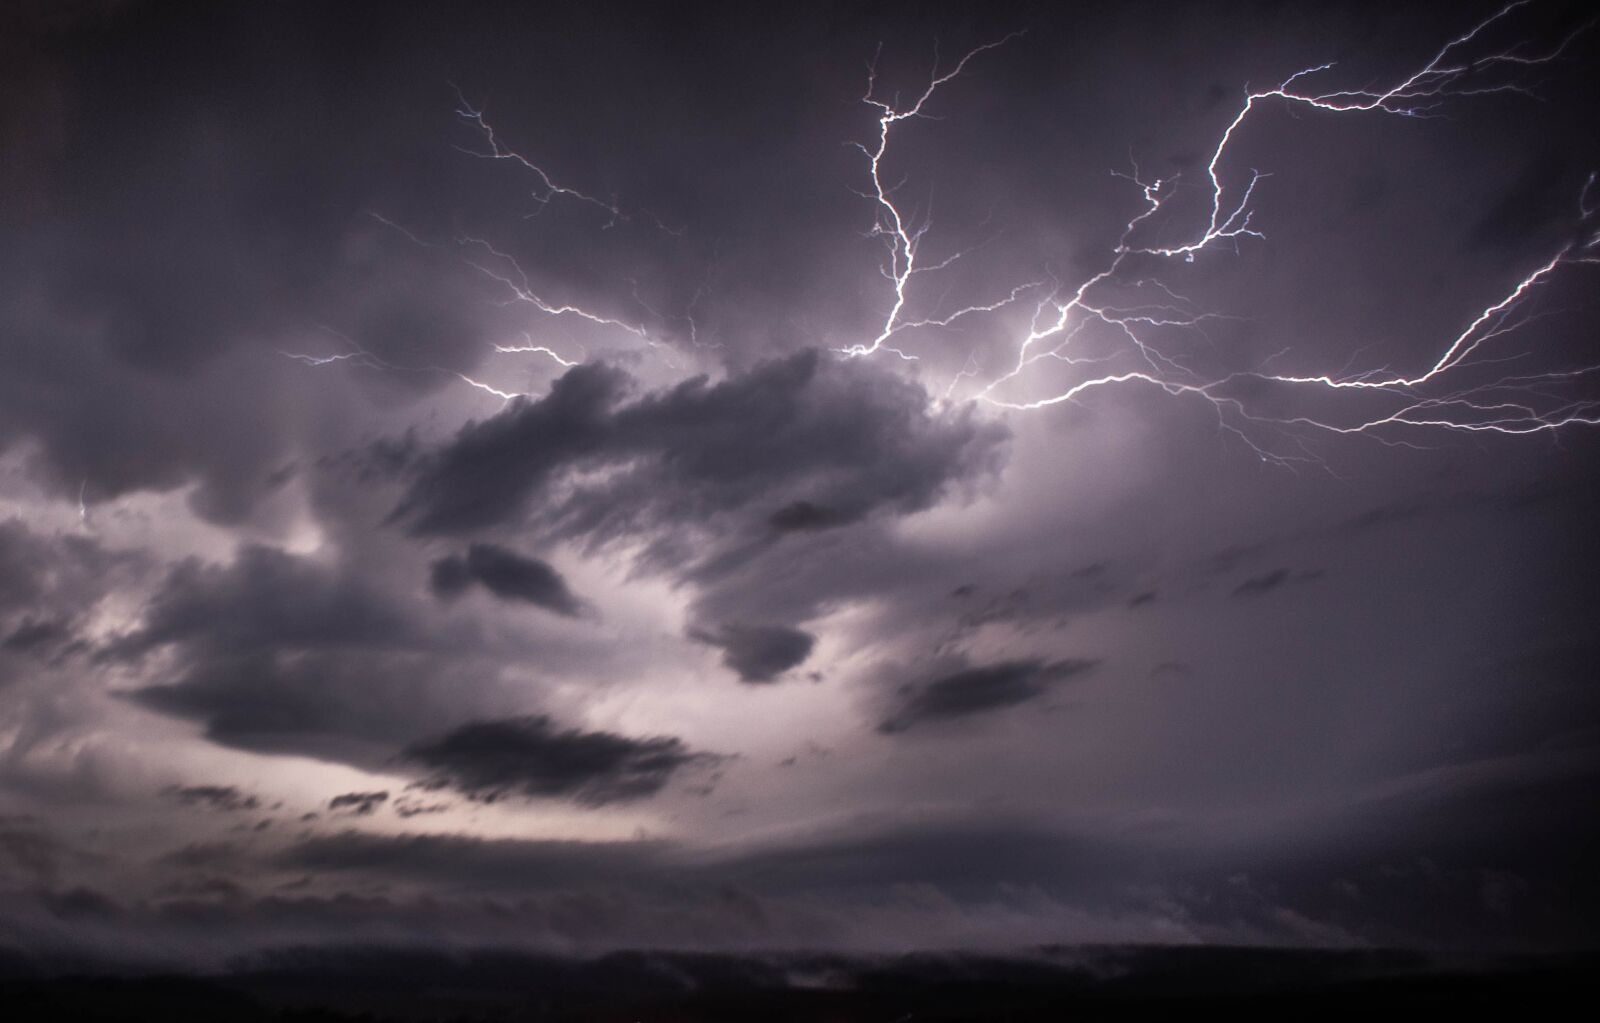 Sony Alpha NEX-5 sample photo. Lightning, thunder, weather photography